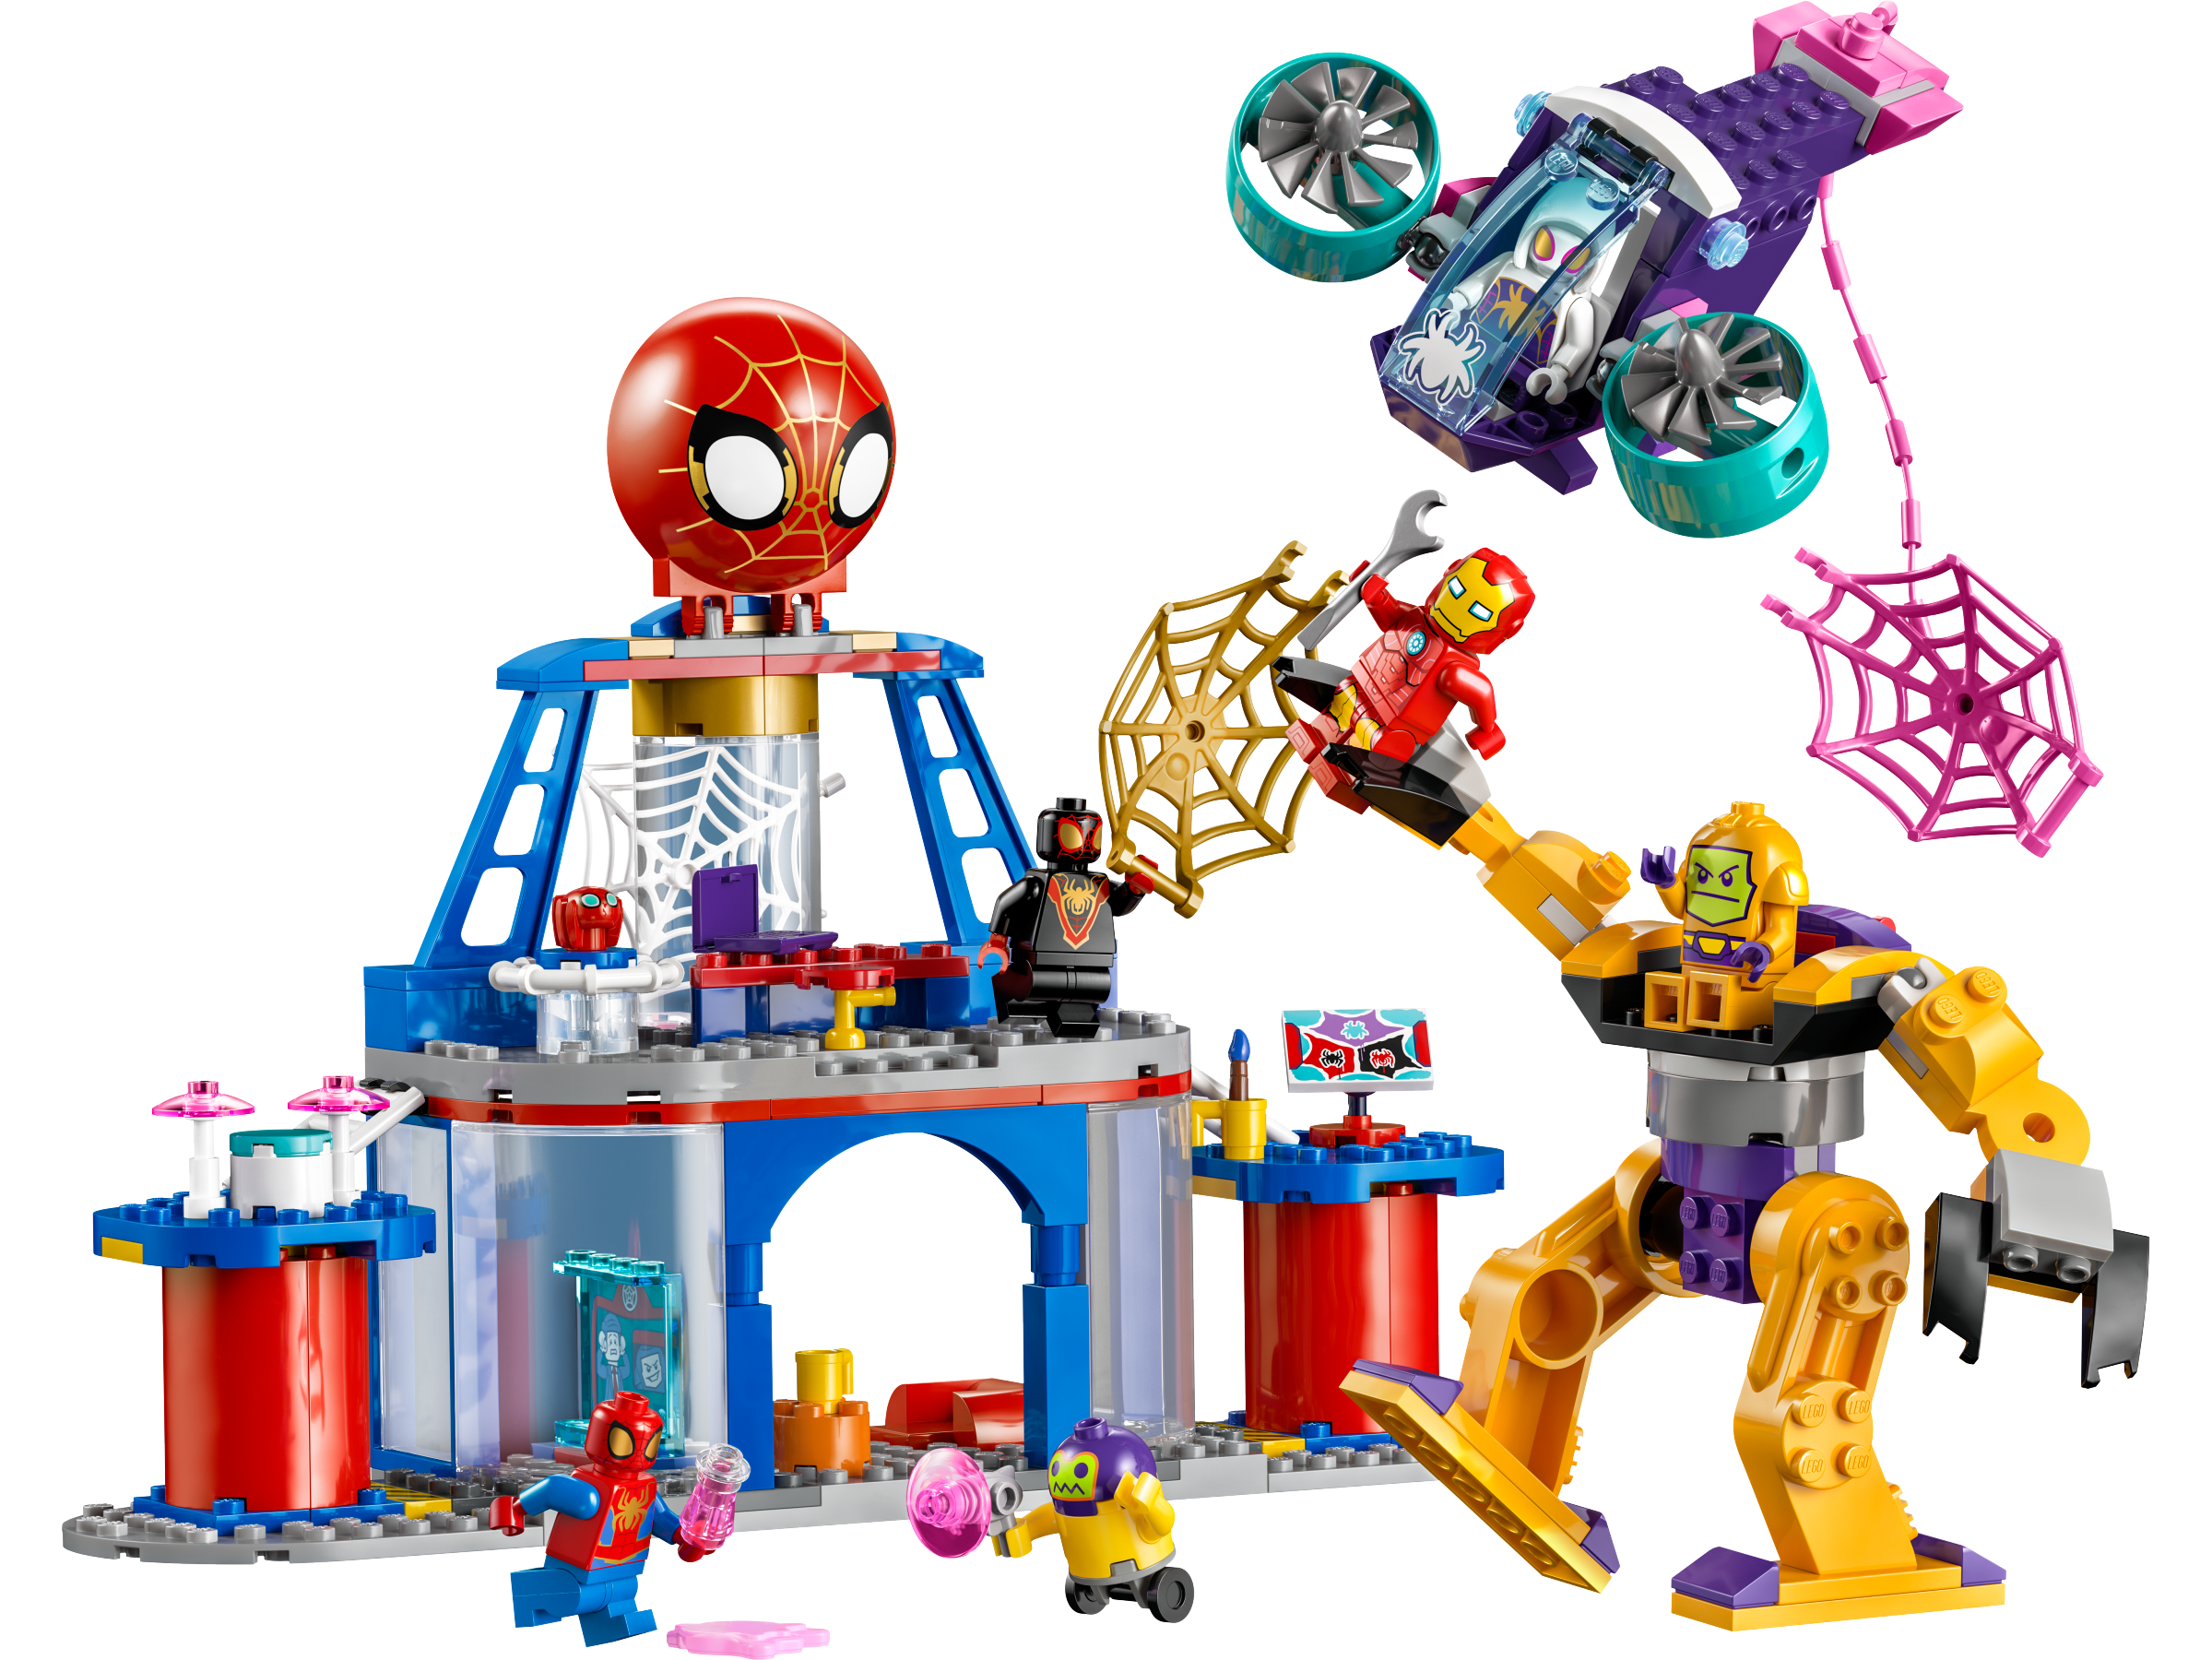 Lego Marvel Spiderman: Equipo Spidey en el Faro del Duende Verde